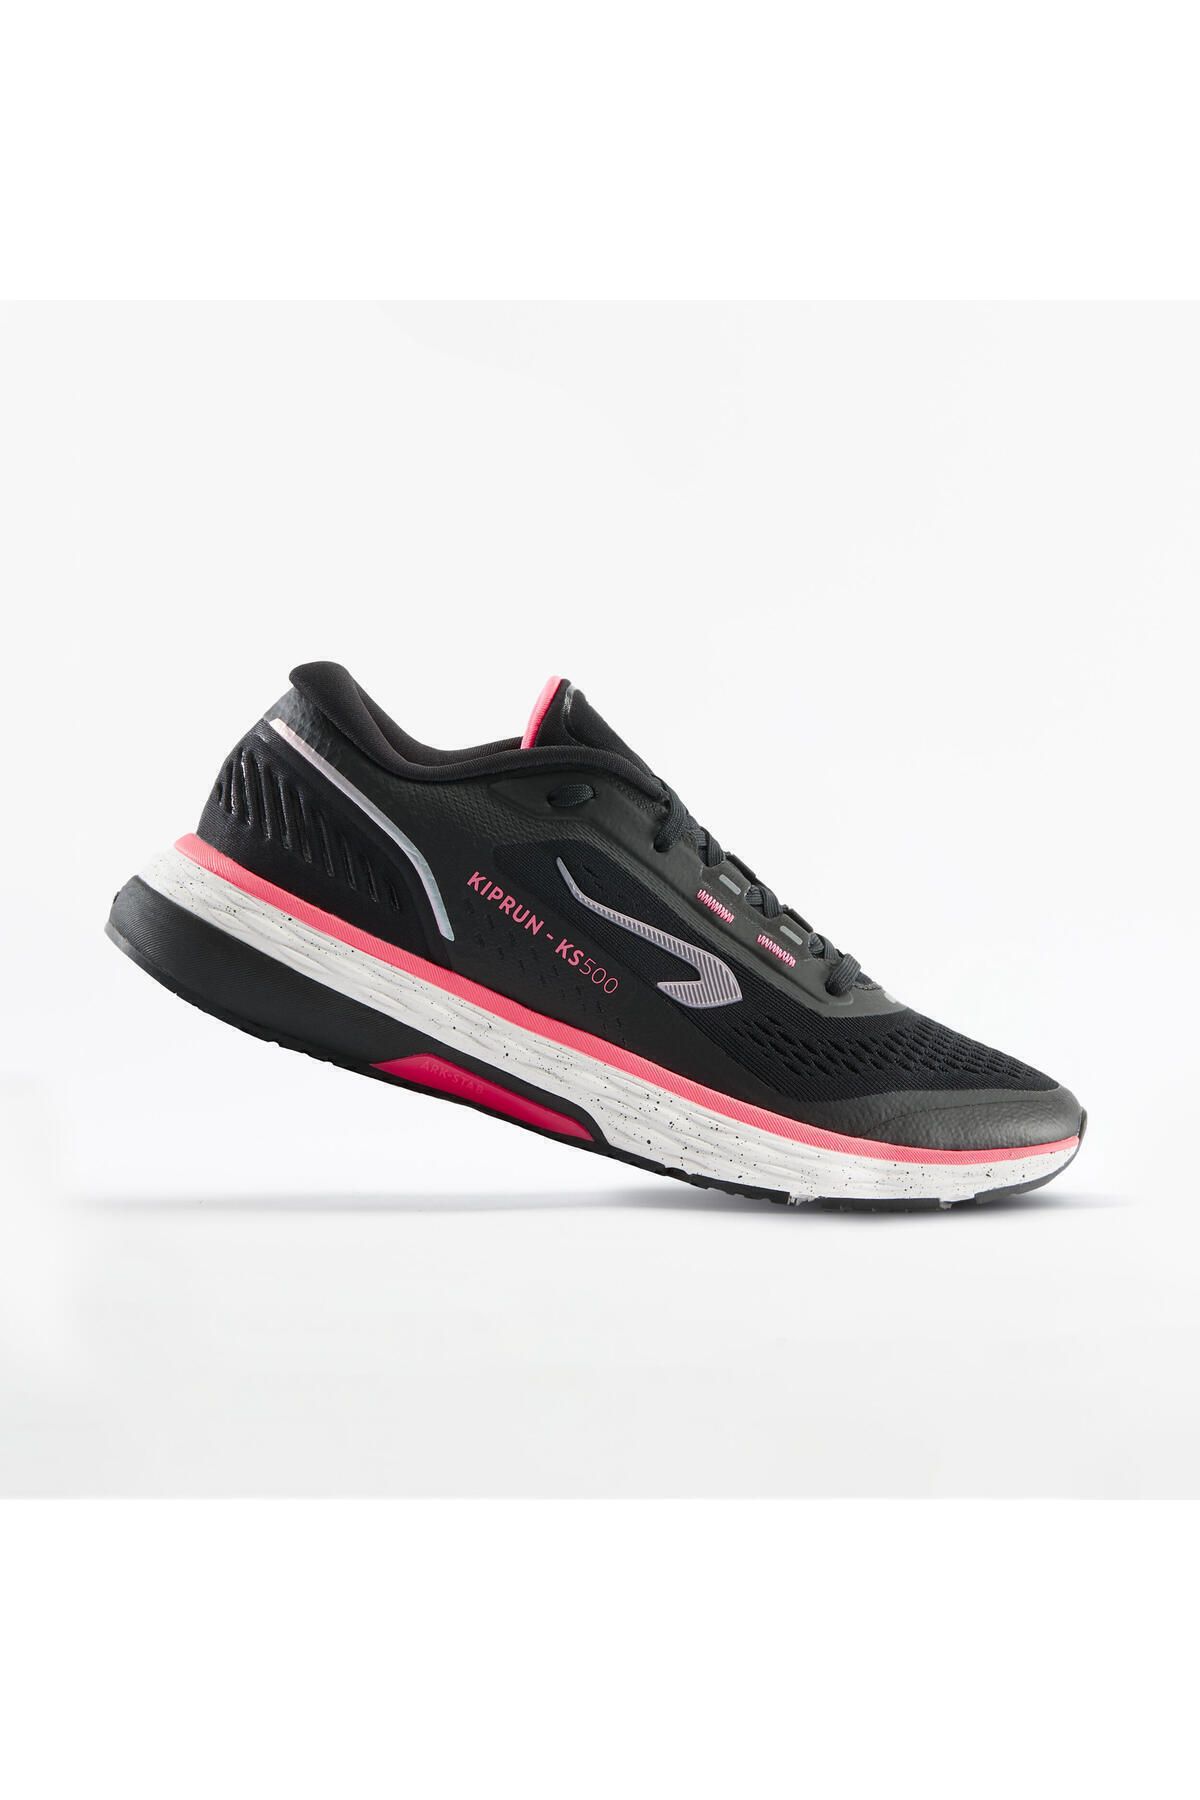 Decathlon Kiprun Kadın Siyah Pembe Koşu Ayakkabısı / Yol Koşusu - Kıprun Ks500